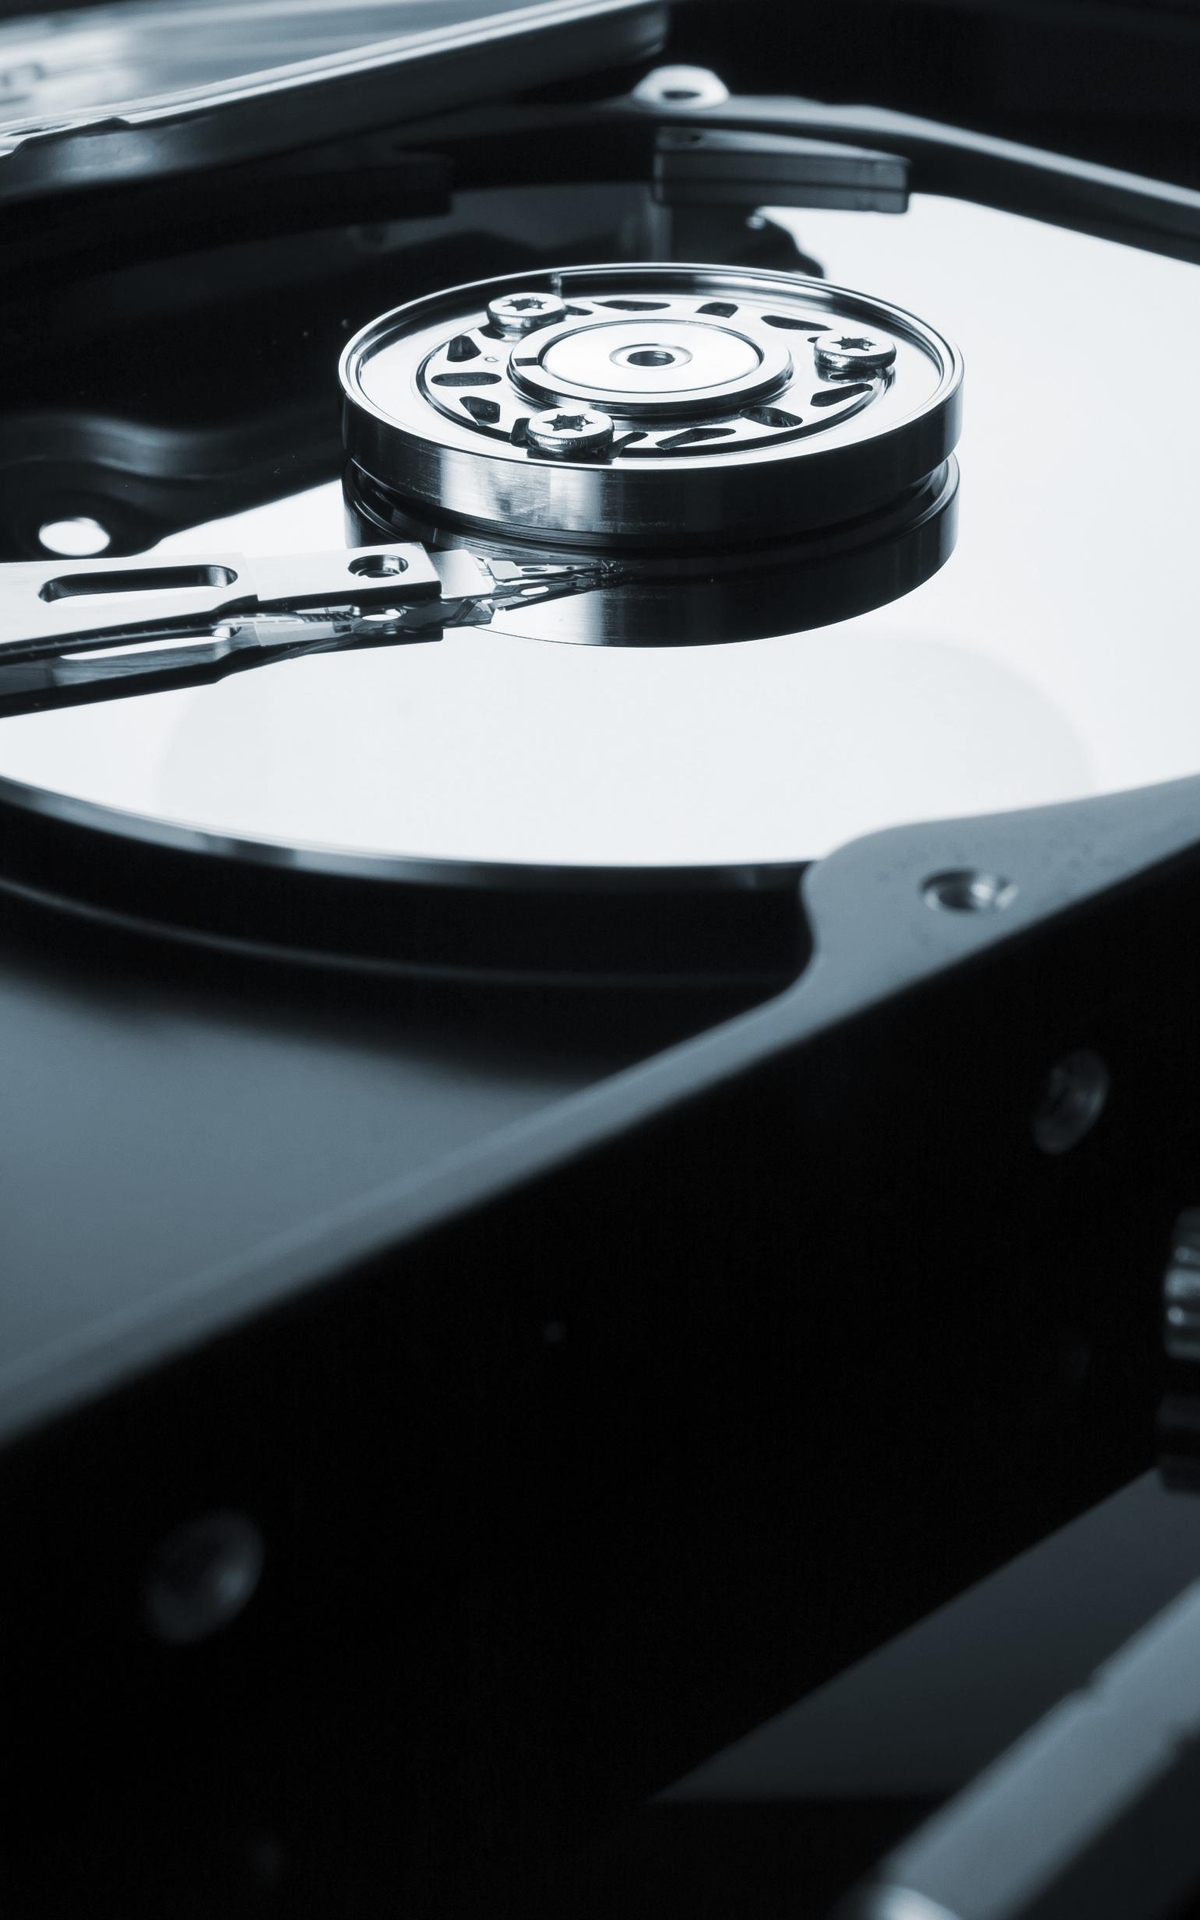 Image: Hard disk, hard drive, data storage, rocker, disks, plates, spindle, keys, holes